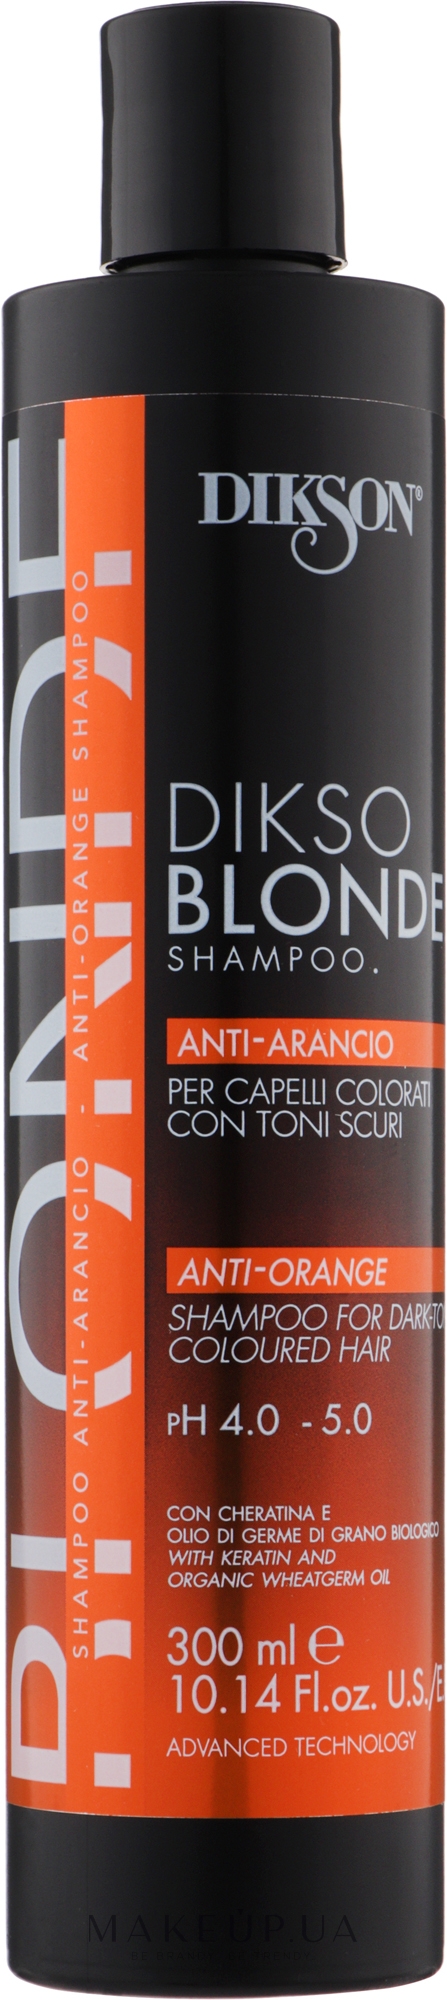 Шампунь-нейтралізатор помаранчевого кольору при знебарвлюванні/освітленні з низьким УГТ - Dikson DiksoBlonde Anti-Arancio Shampoo — фото 300ml